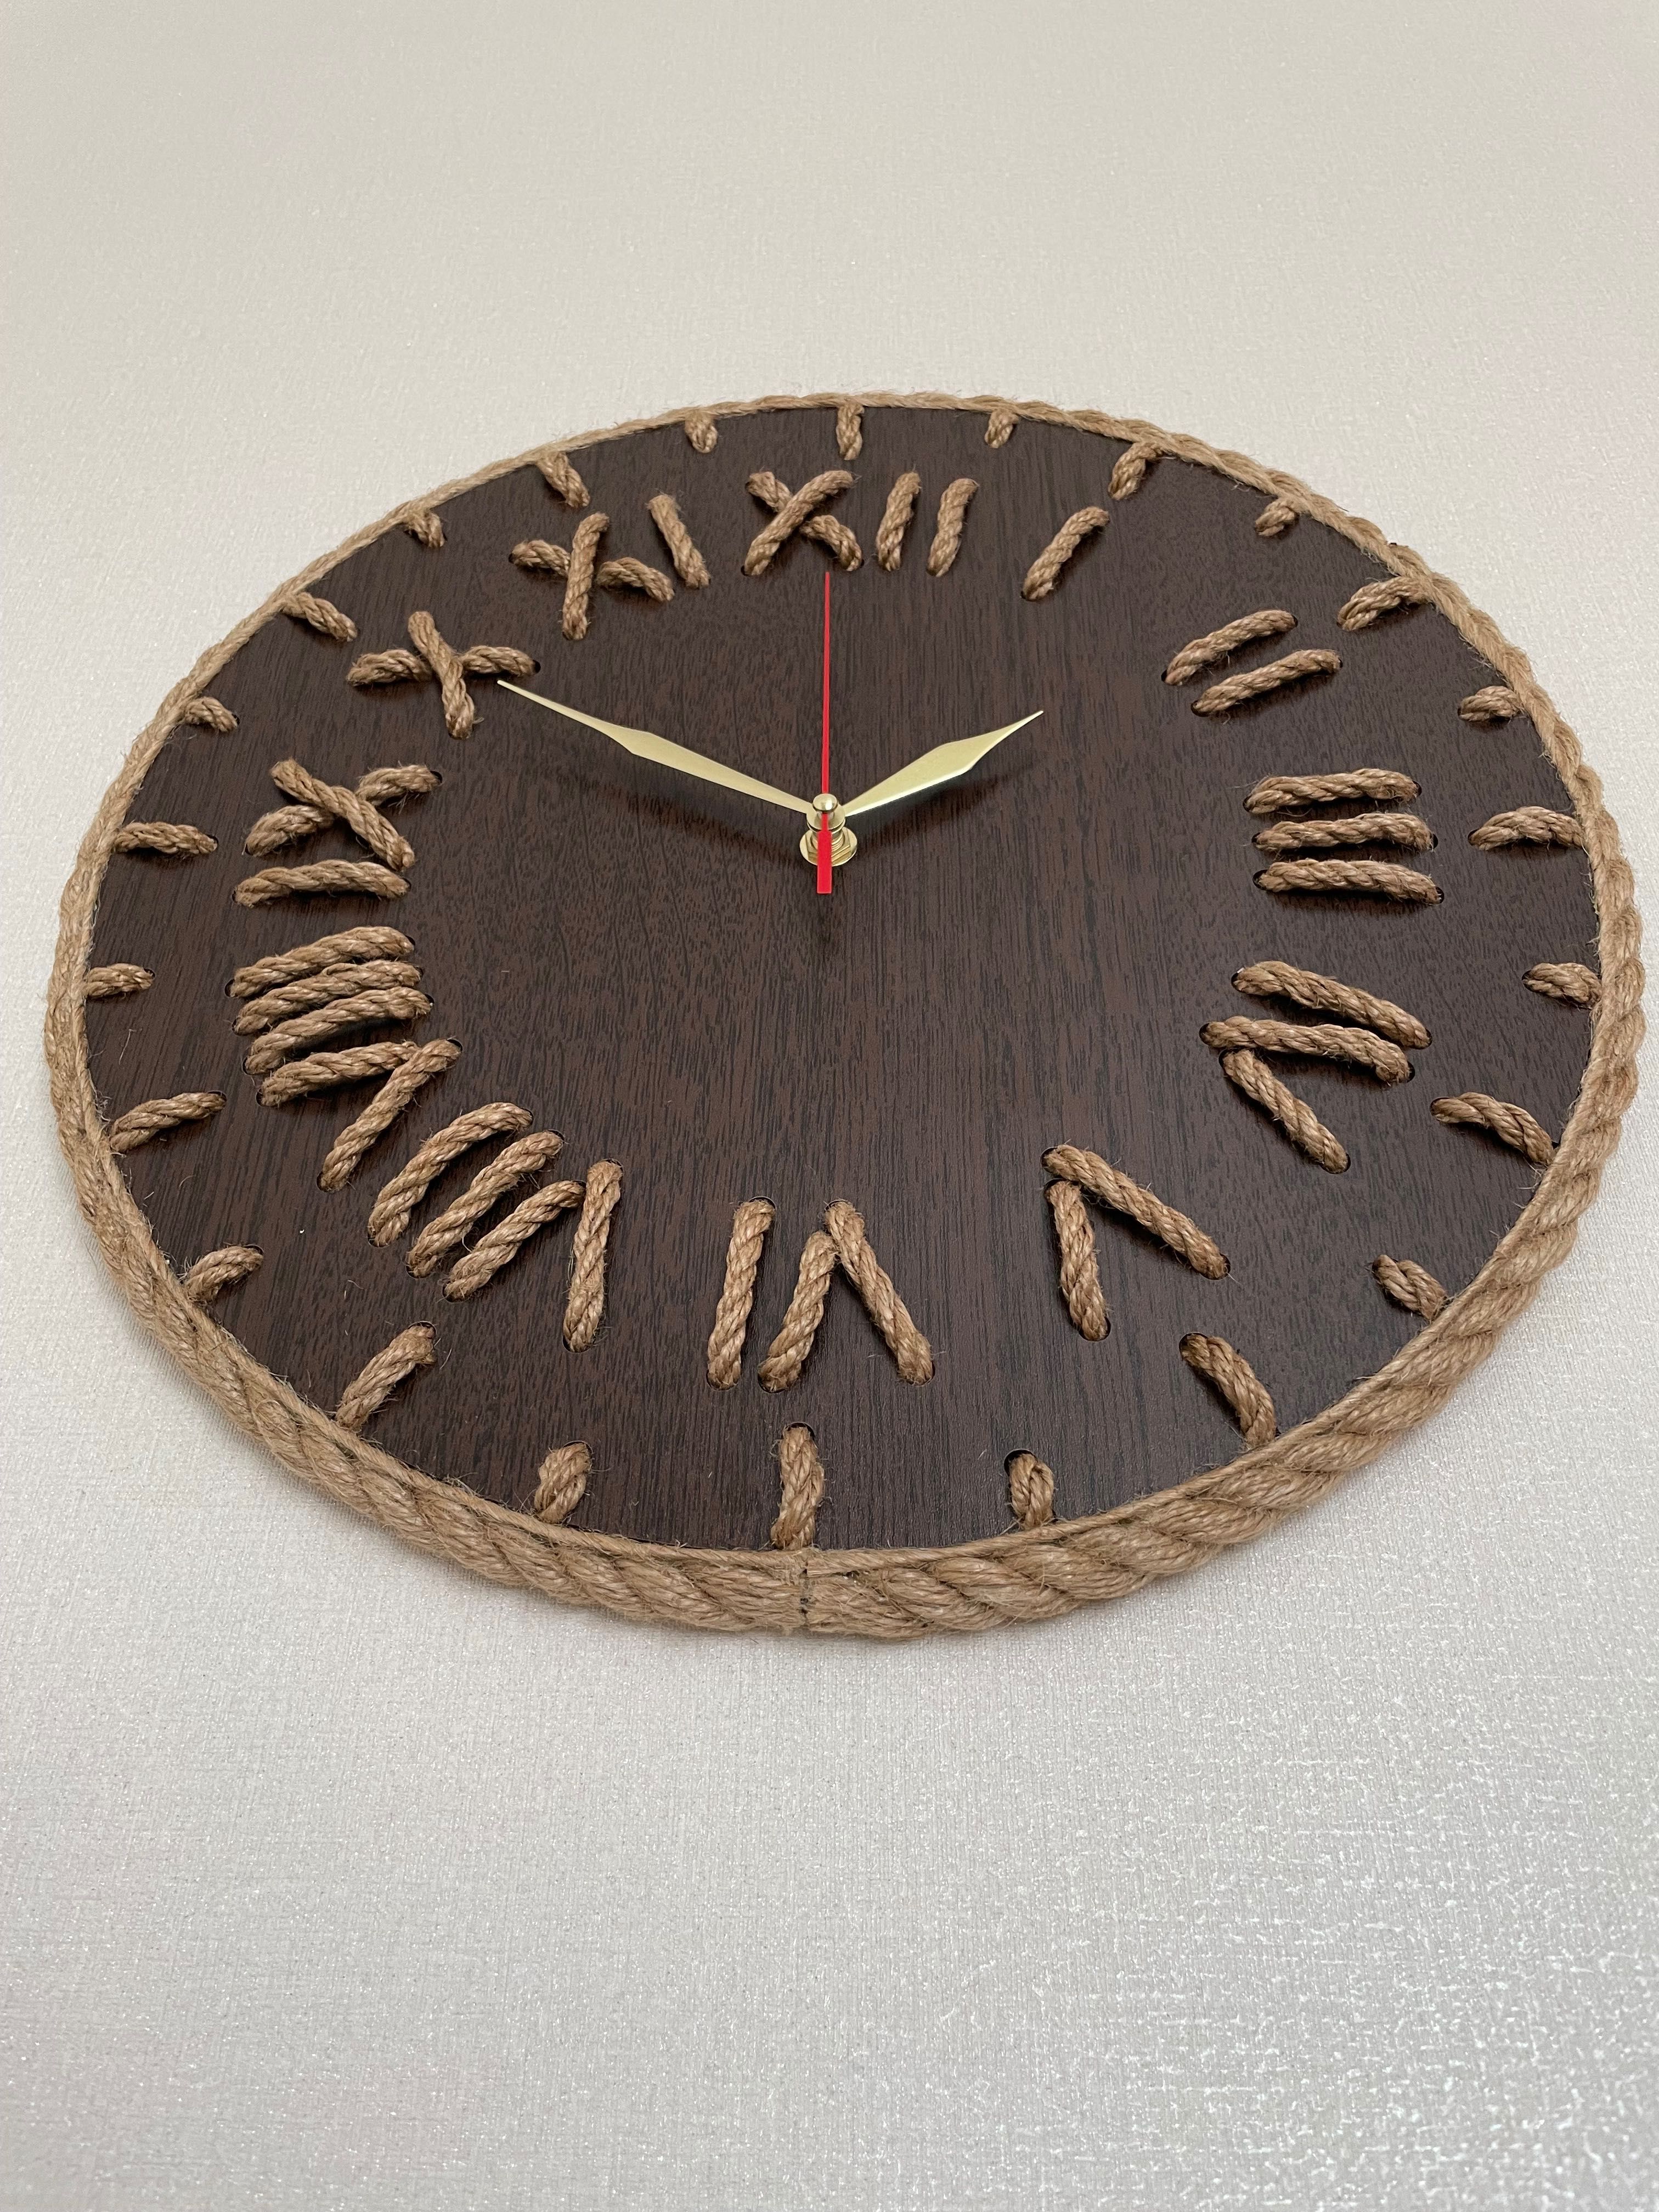 Годинник коричневий настінний ручної роботи з канату, декор